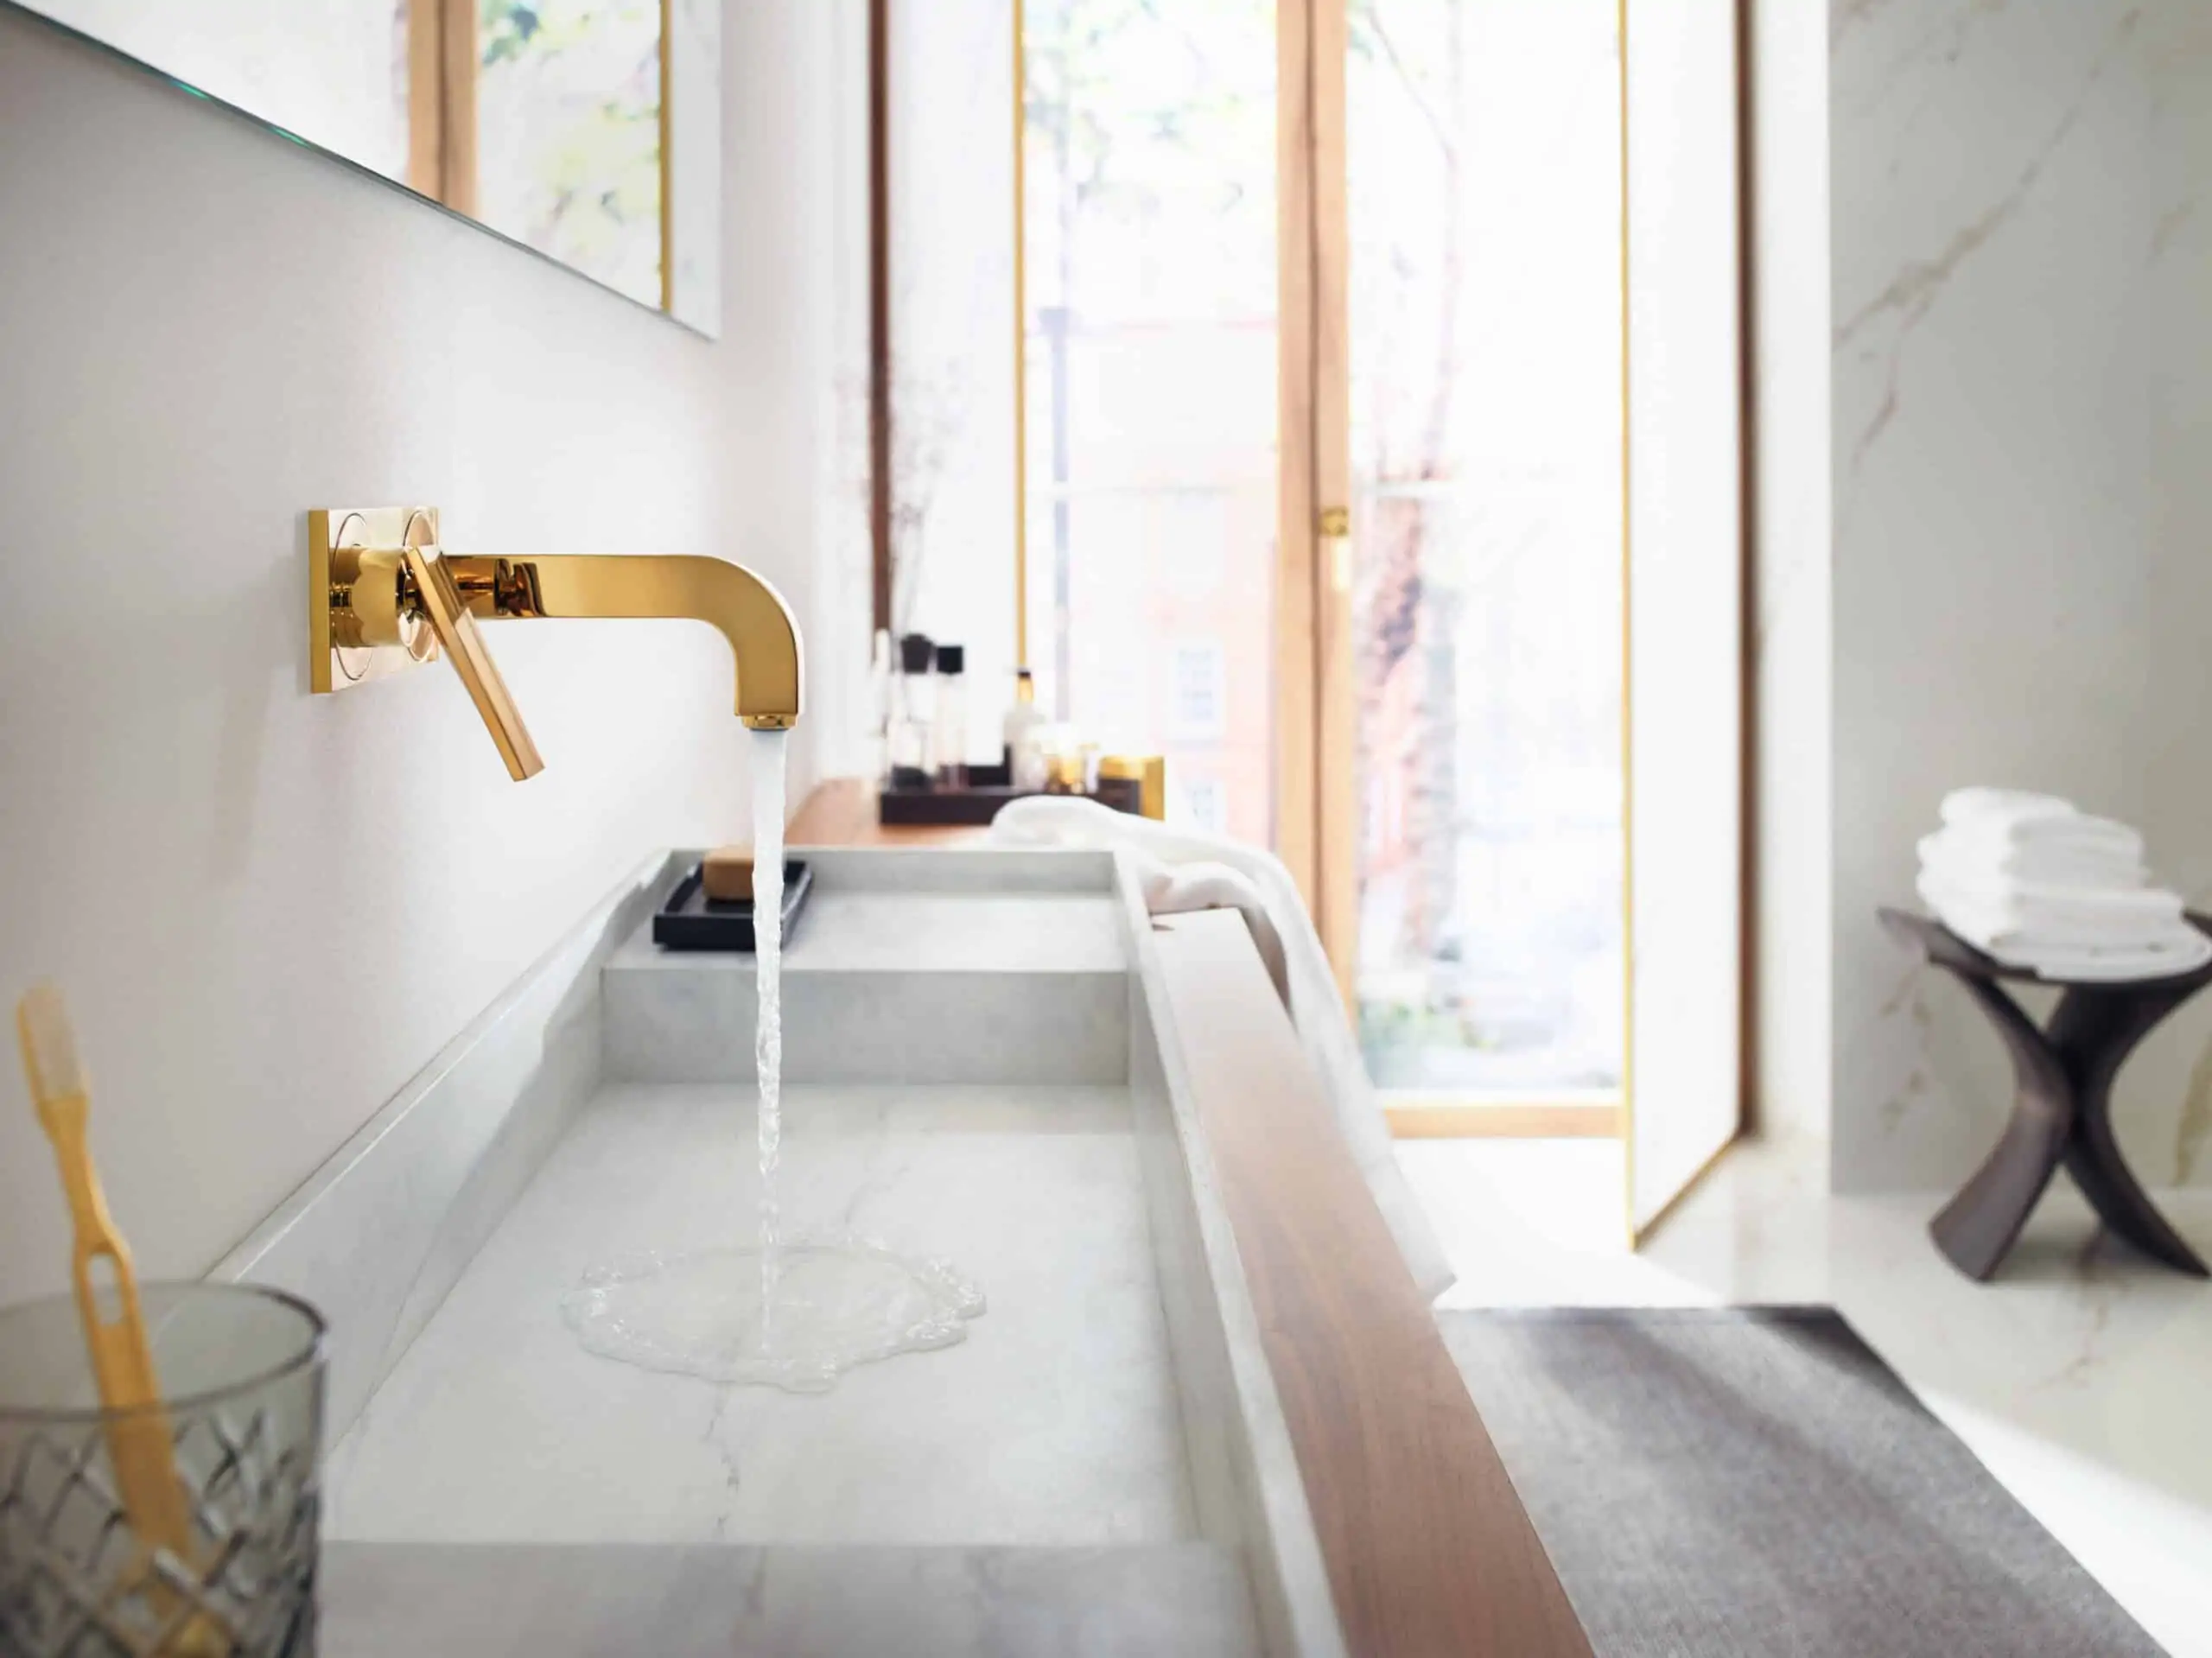 AXOR Citterio modern bathroom design collection, gold wall-mounted faucet